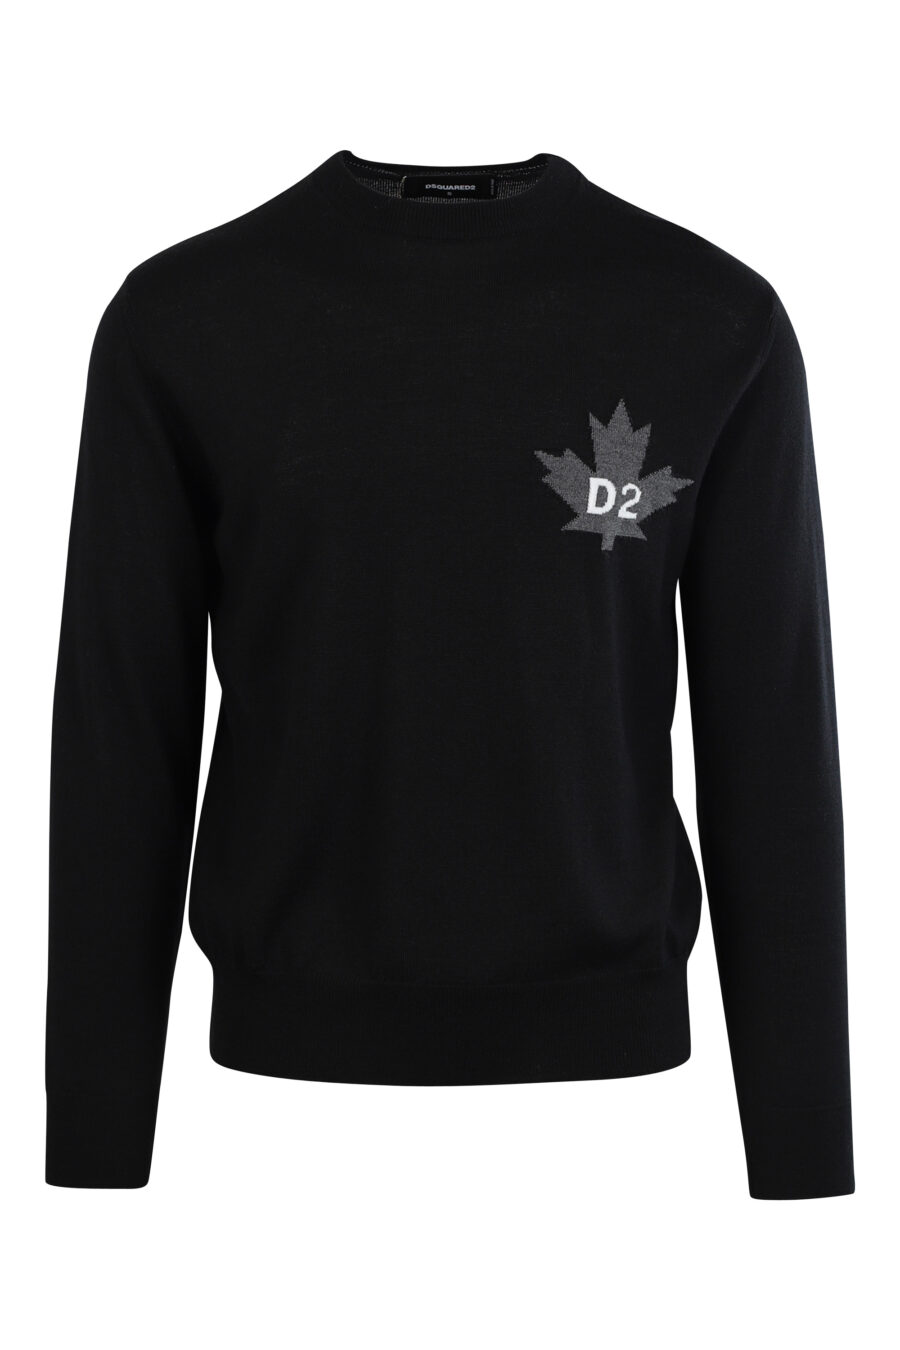 Schwarzer Pullover mit Mini-Logo "D2" auf dem Blatt - 8054148057916